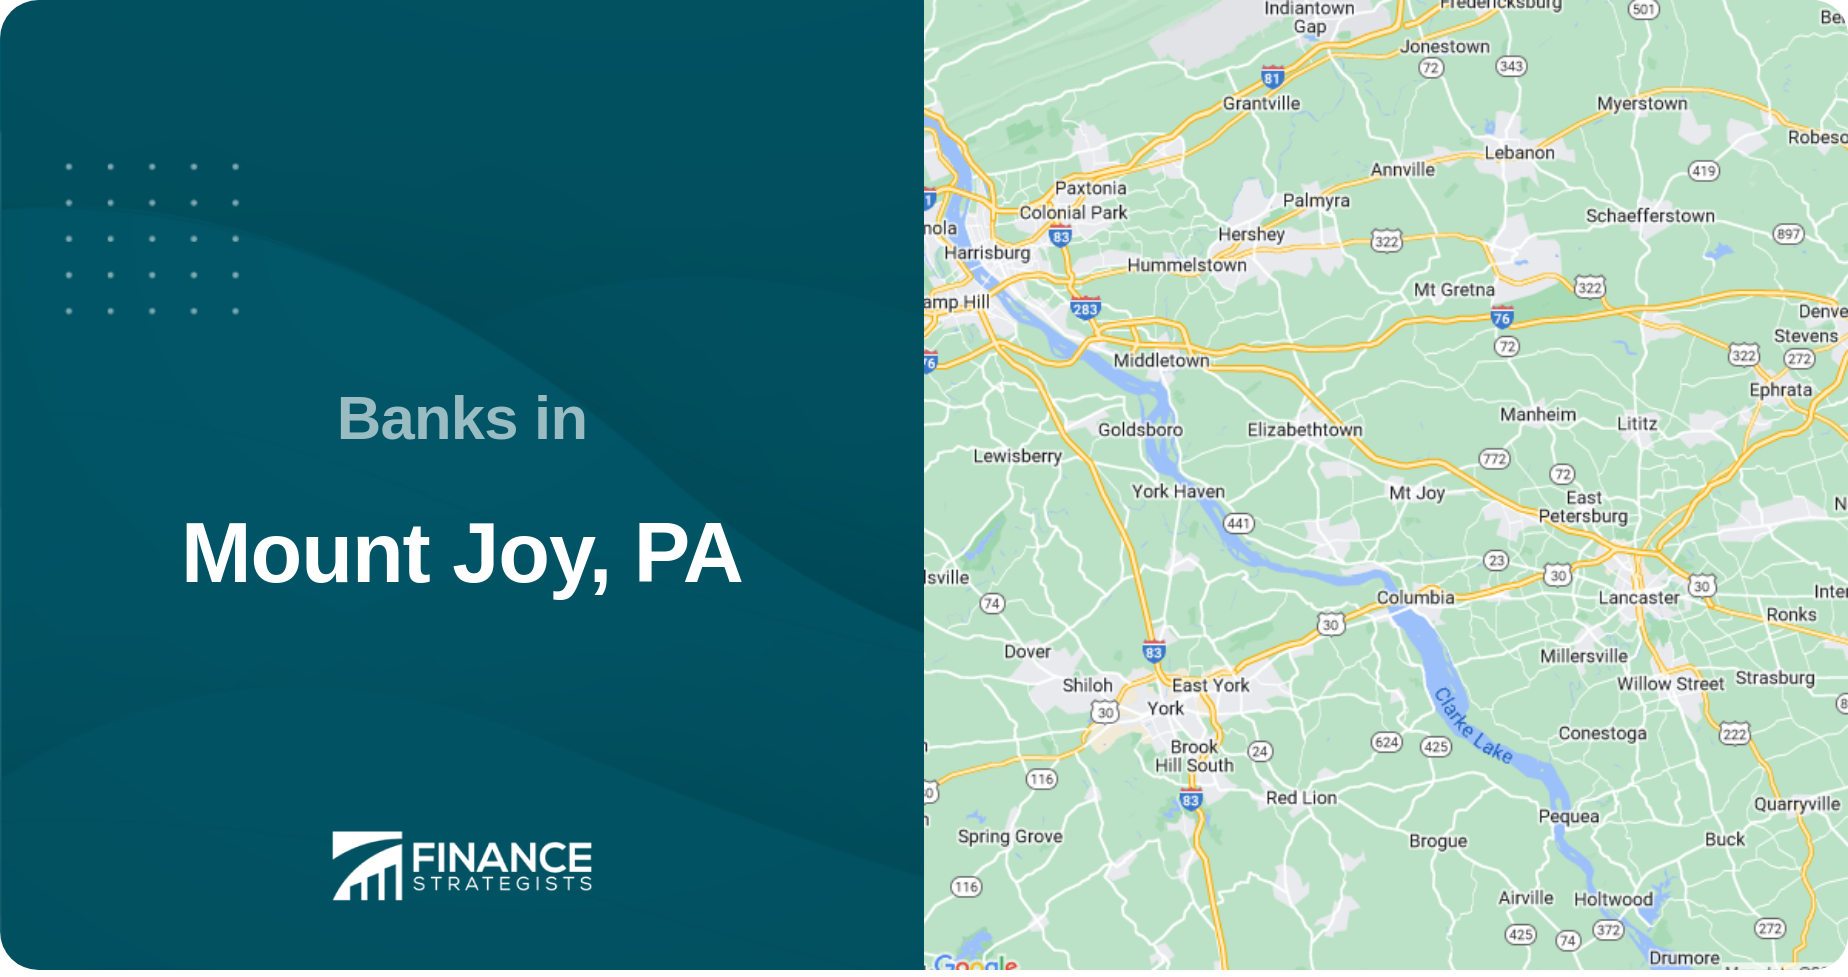 Banks in Mount Joy, PA